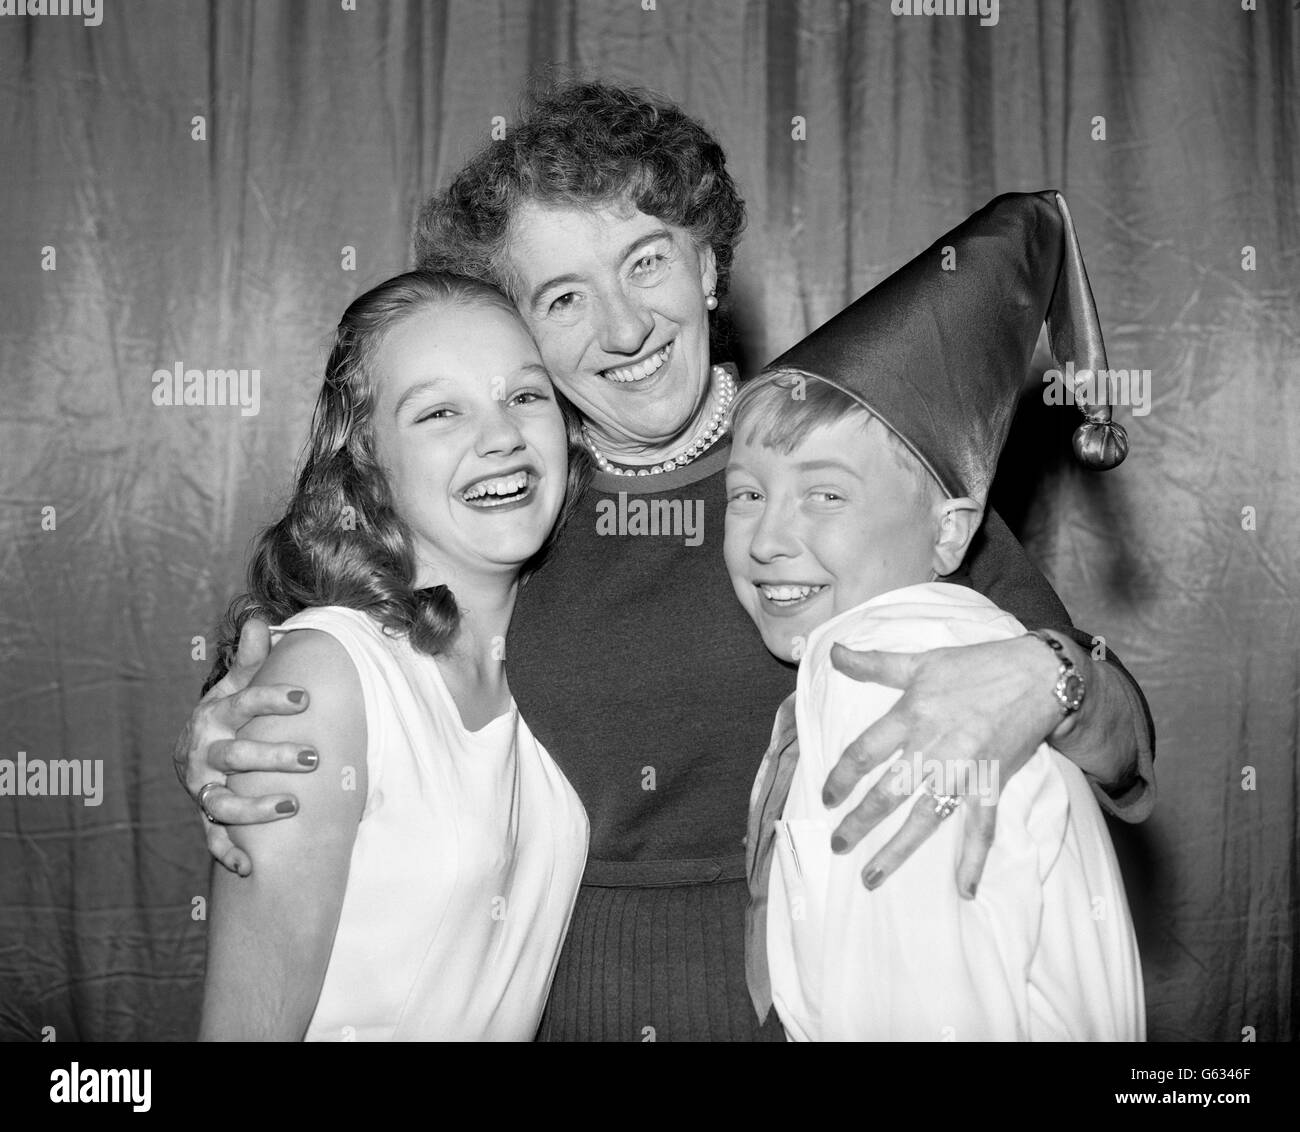 Enid Blyton, l'auteure pour enfants, au Prince's Theatre de Londres, avec Colin Saull, 13 ans, et Gloria Johnson, 15 ans, qui sont les vedette dans sa production de Noddy à Toyland. Banque D'Images